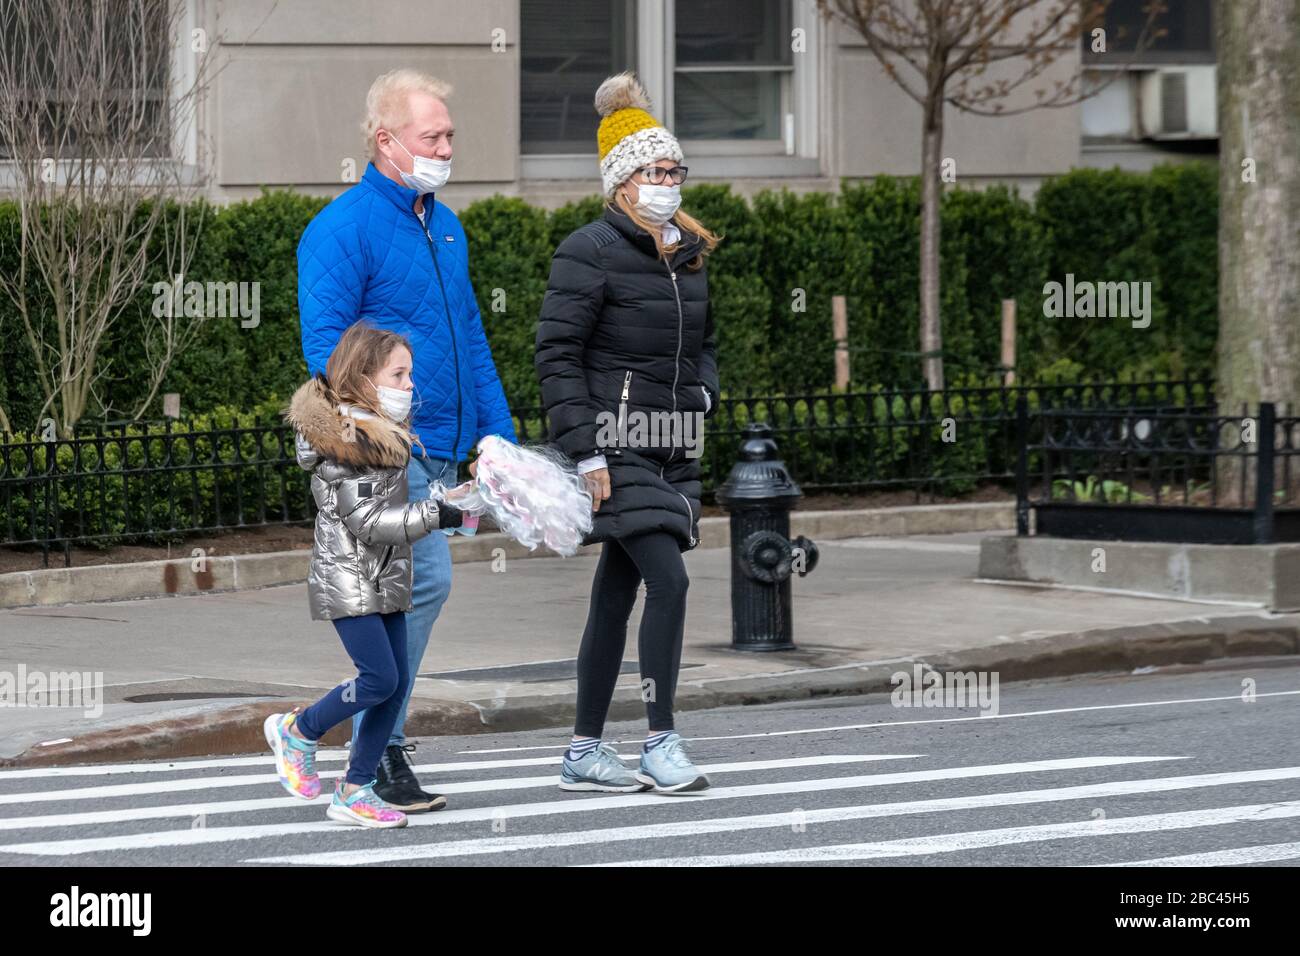 New York, USA. April 2020. Eine Familie trägt Gesichtsmasken, während sie zu einem Spaziergang in New York City gehen. Heute sagte die Regierung, dass Newyorkers ihre Gesichter bedecken sollten, wenn sie nach draußen gehen, um eine Ausbreitung des Coronavirus zu verhindern. Kredit: Enrique Shore/Alamy Live News Stockfoto